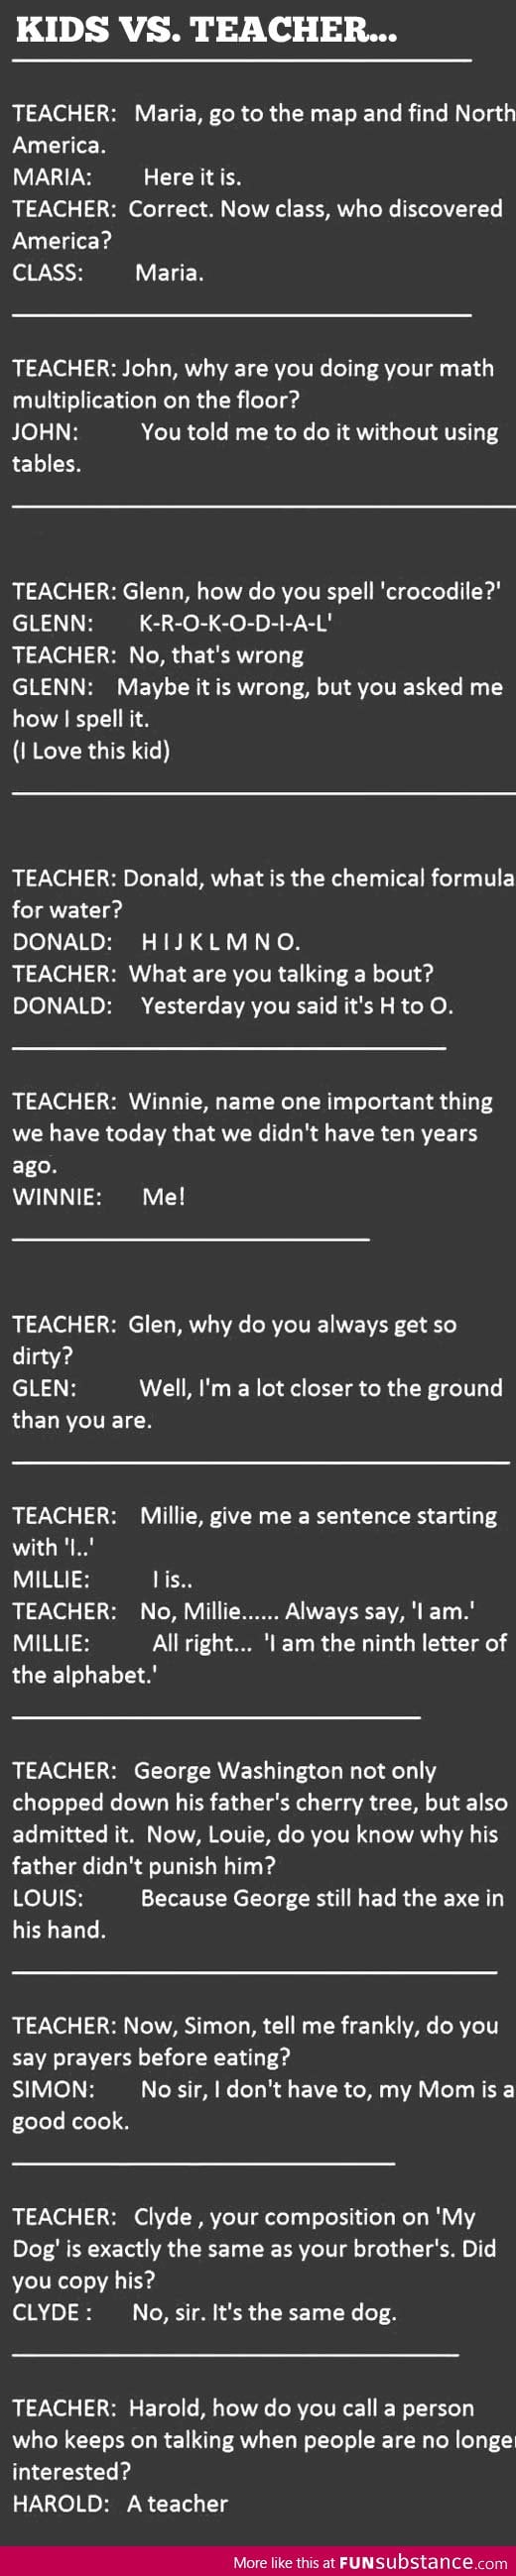 Kids vs Teacher